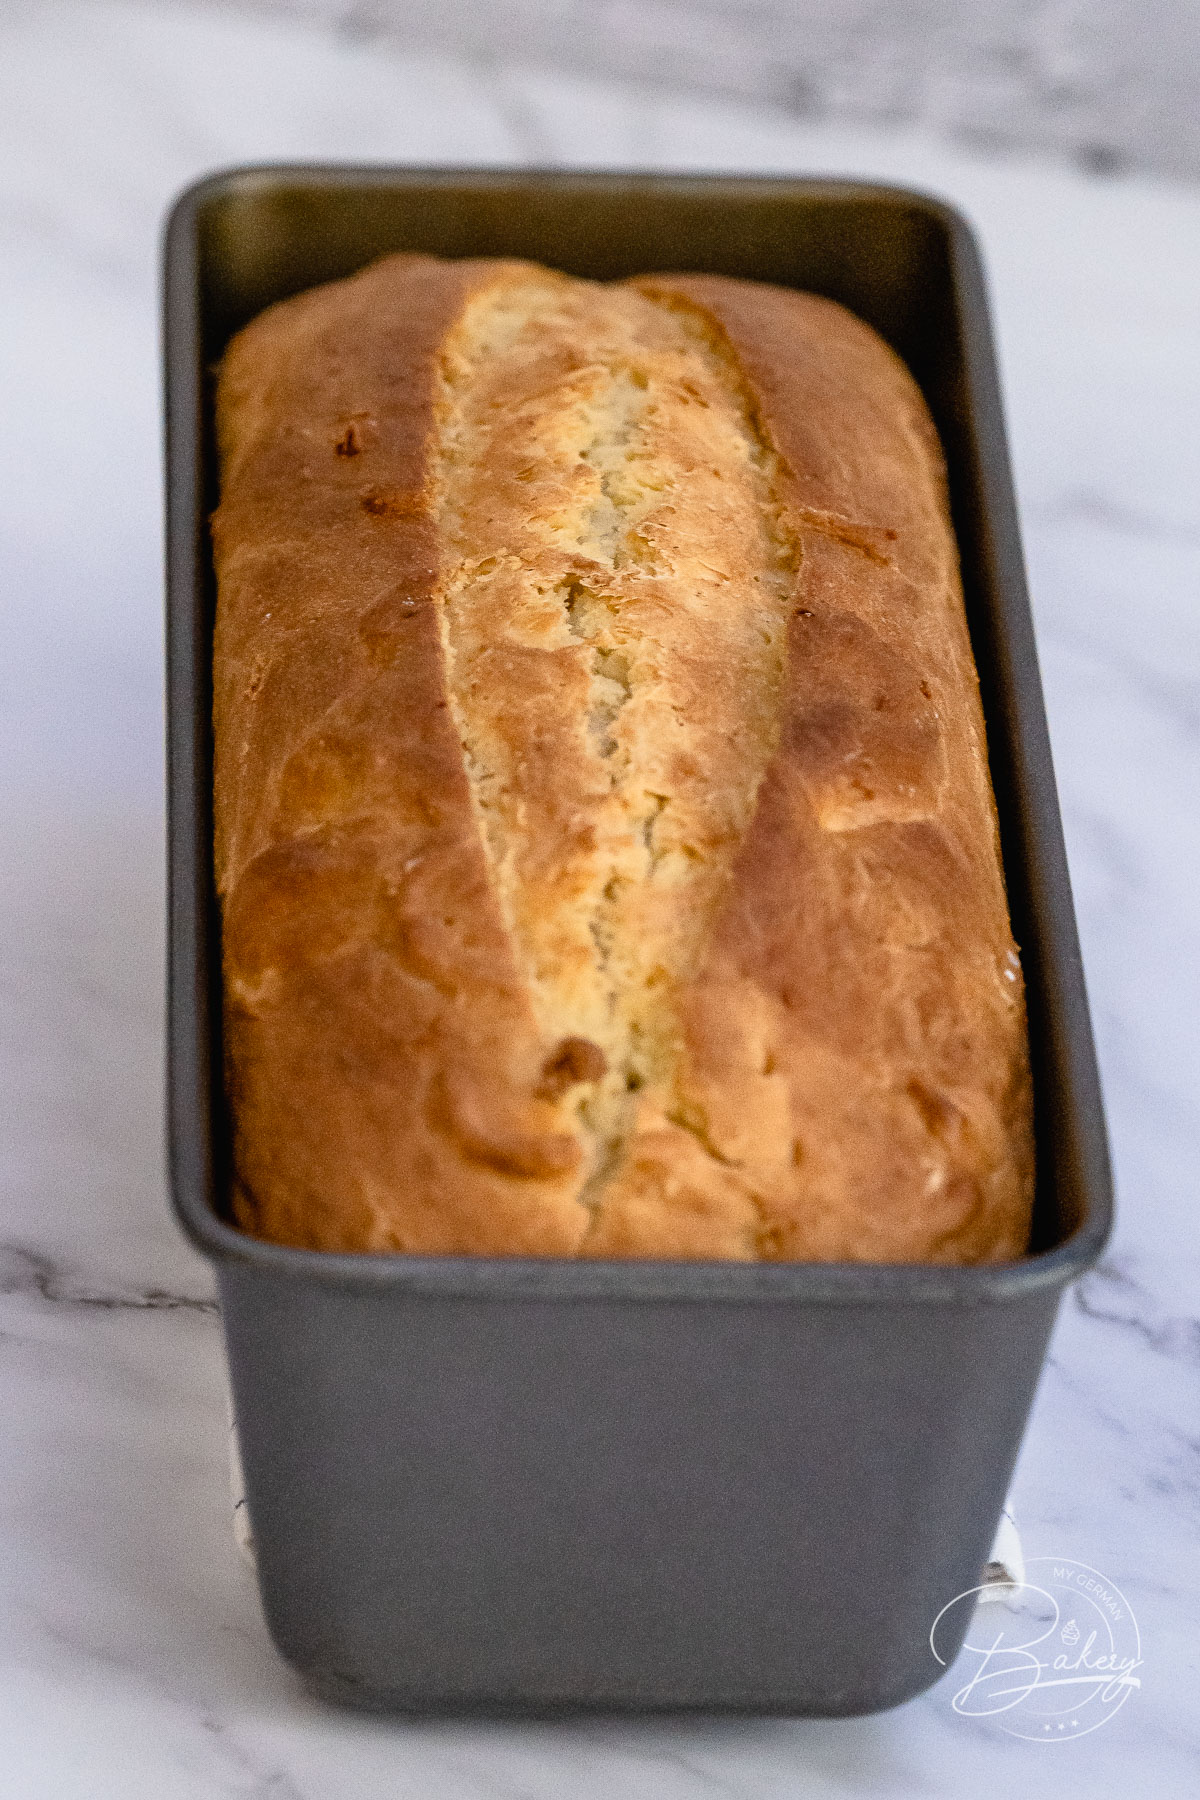 Einfacher süßer Stuten - Brot Rezept - Leckeres Brot schnell selbstgemacht - gelingt immer - wie beim Bäcker - frisch selbst gebacken - Sonntagsfrühstück - Stuten und süßes Weißbrot - Rezept für einfachen süßen Stuten als Brot Rezept. Leckeres süßes Brot schnell gebacken. Zutaten: Mehl, Zucker, Milch, Eier, Hefe, Butter